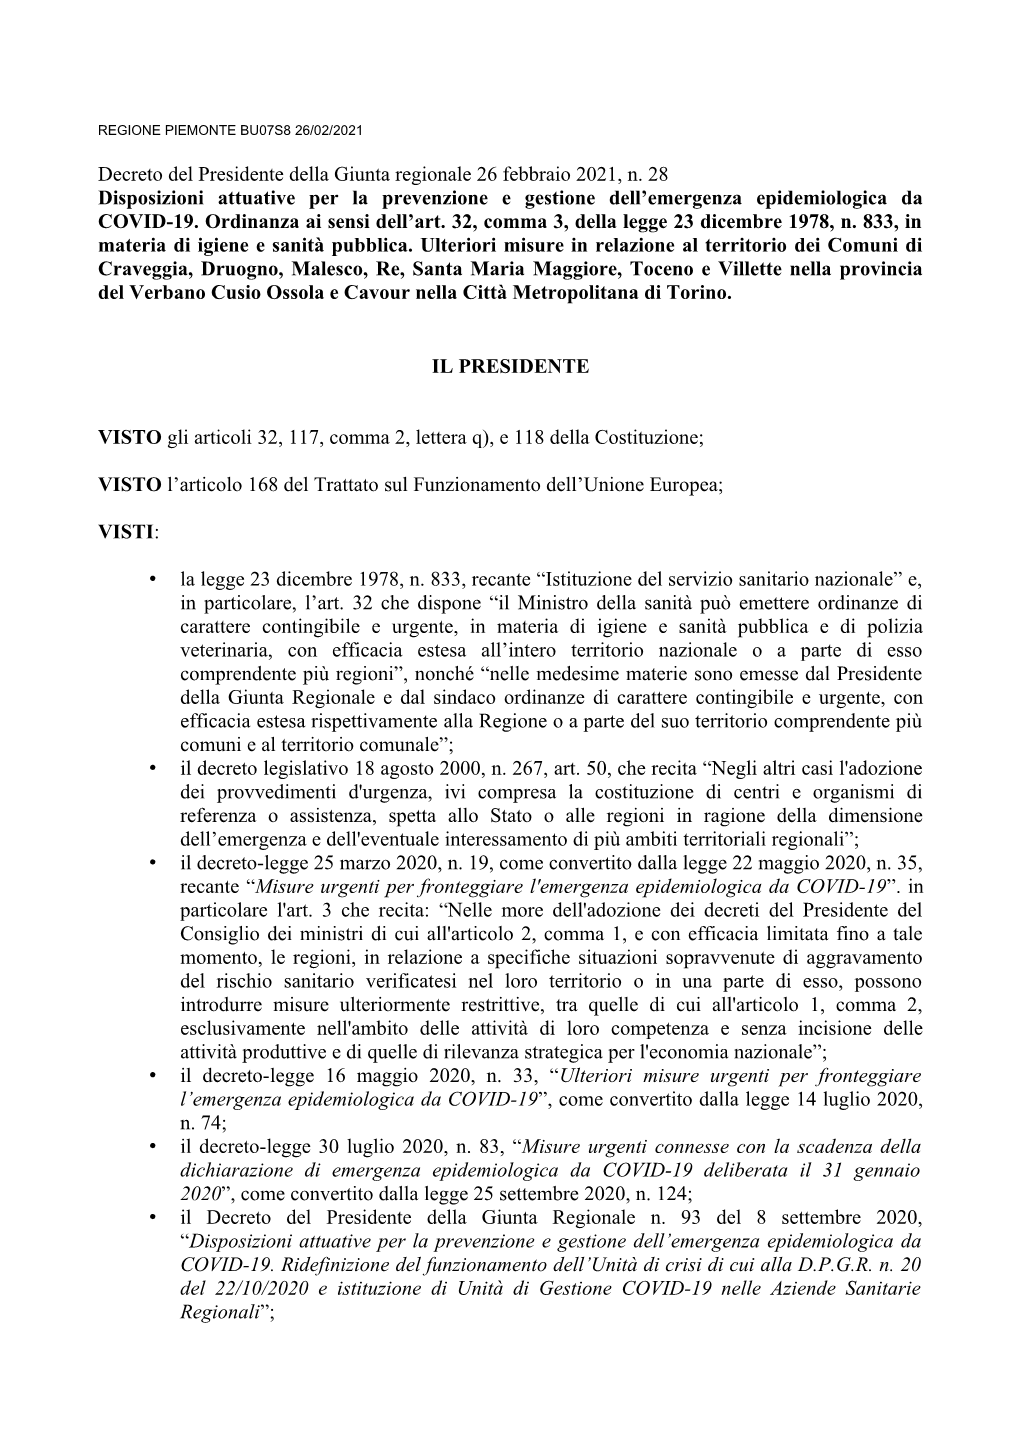 Decreto Del Presidente Della Giunta Regionale 26 Febbraio 2021, N. 28 Disposizioni Attuative Per La Prevenzione E Gestione Dell’Emergenza Epidemiologica Da COVID-19